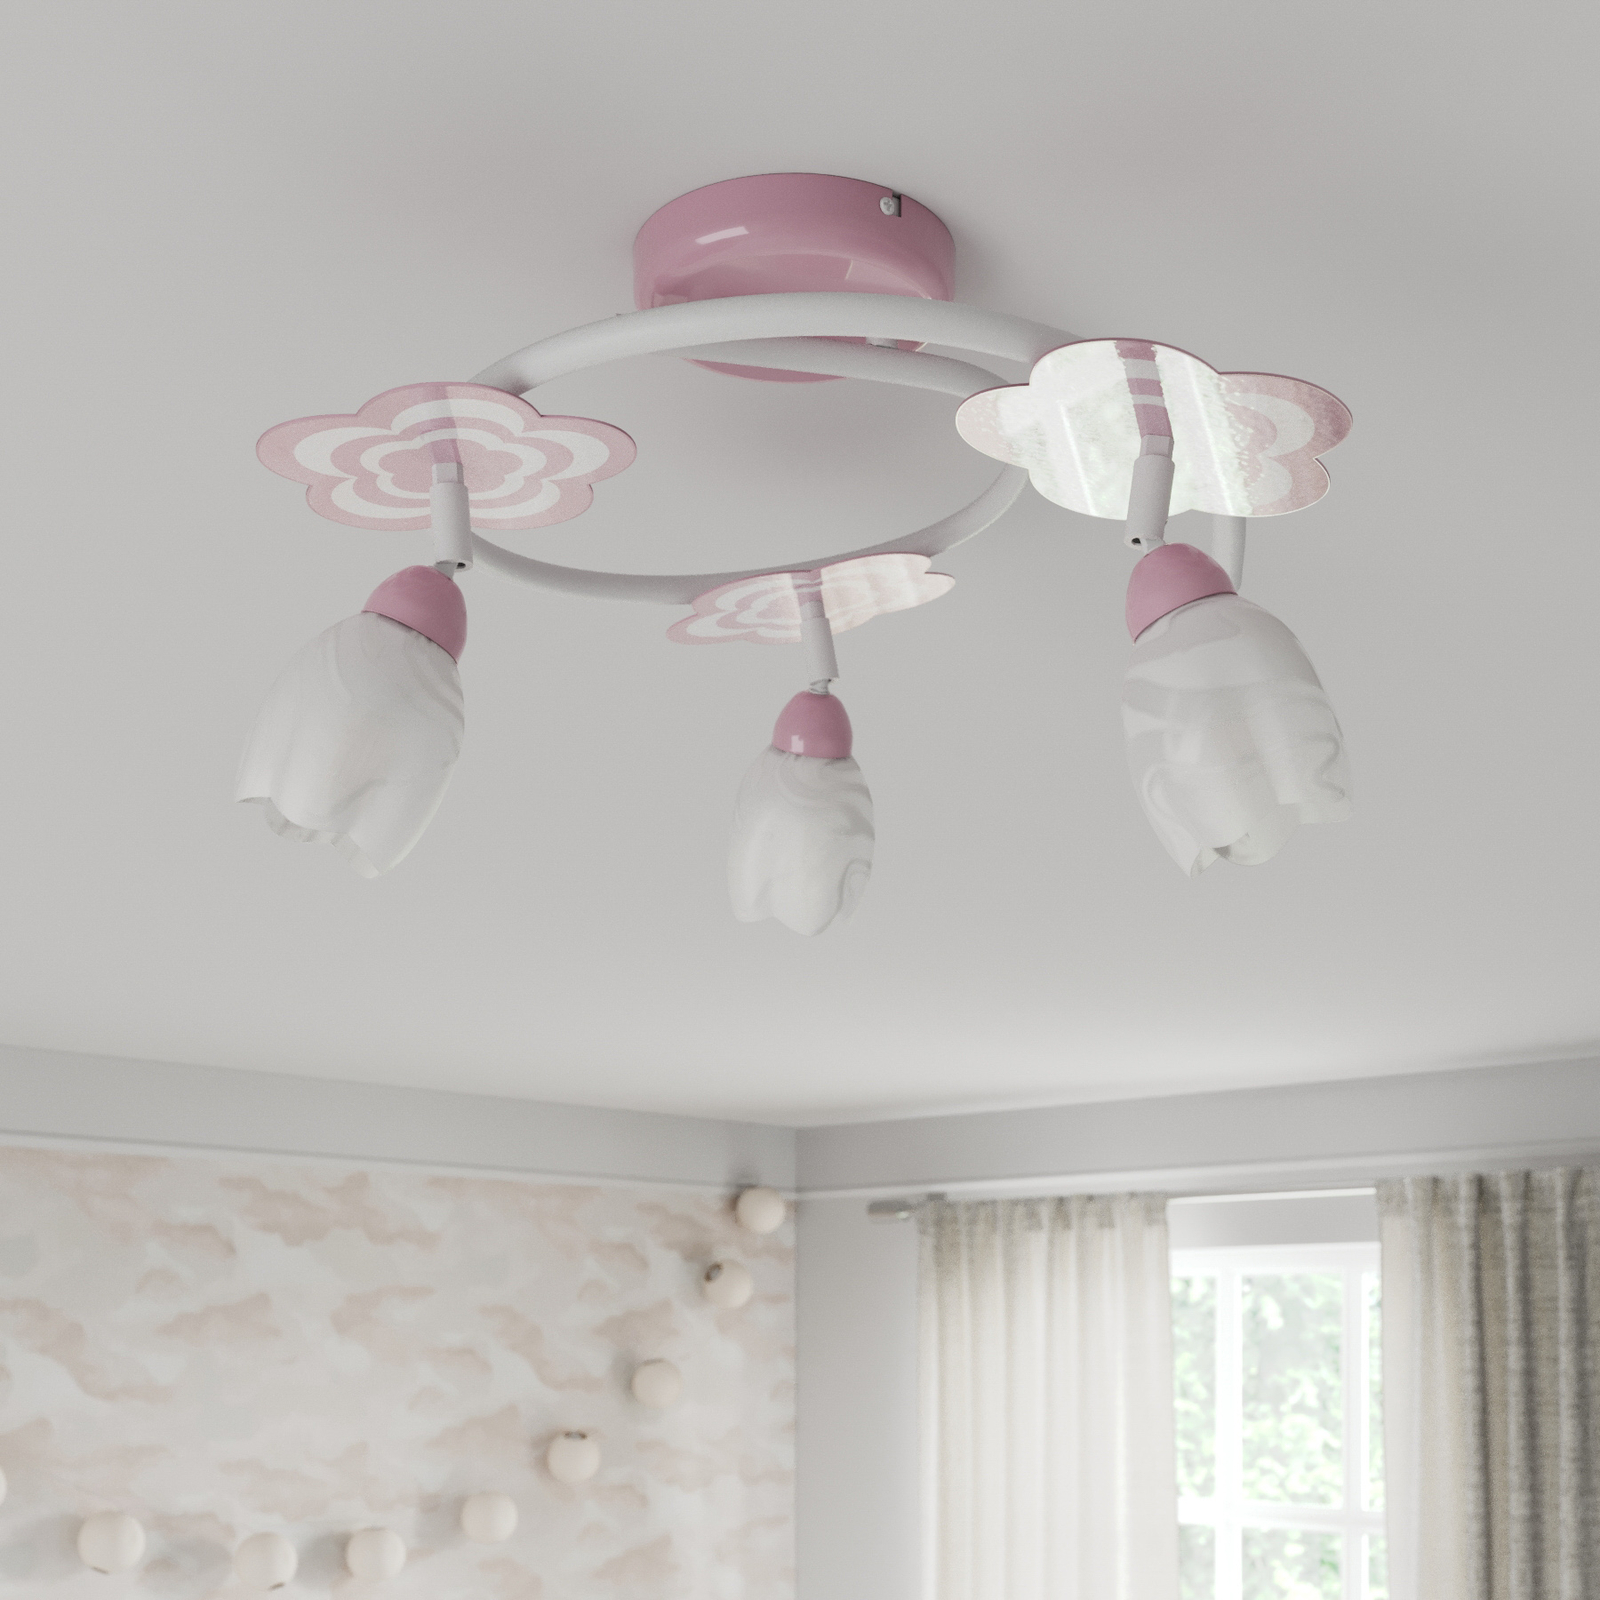 Mailin children's ceiling light in pink round